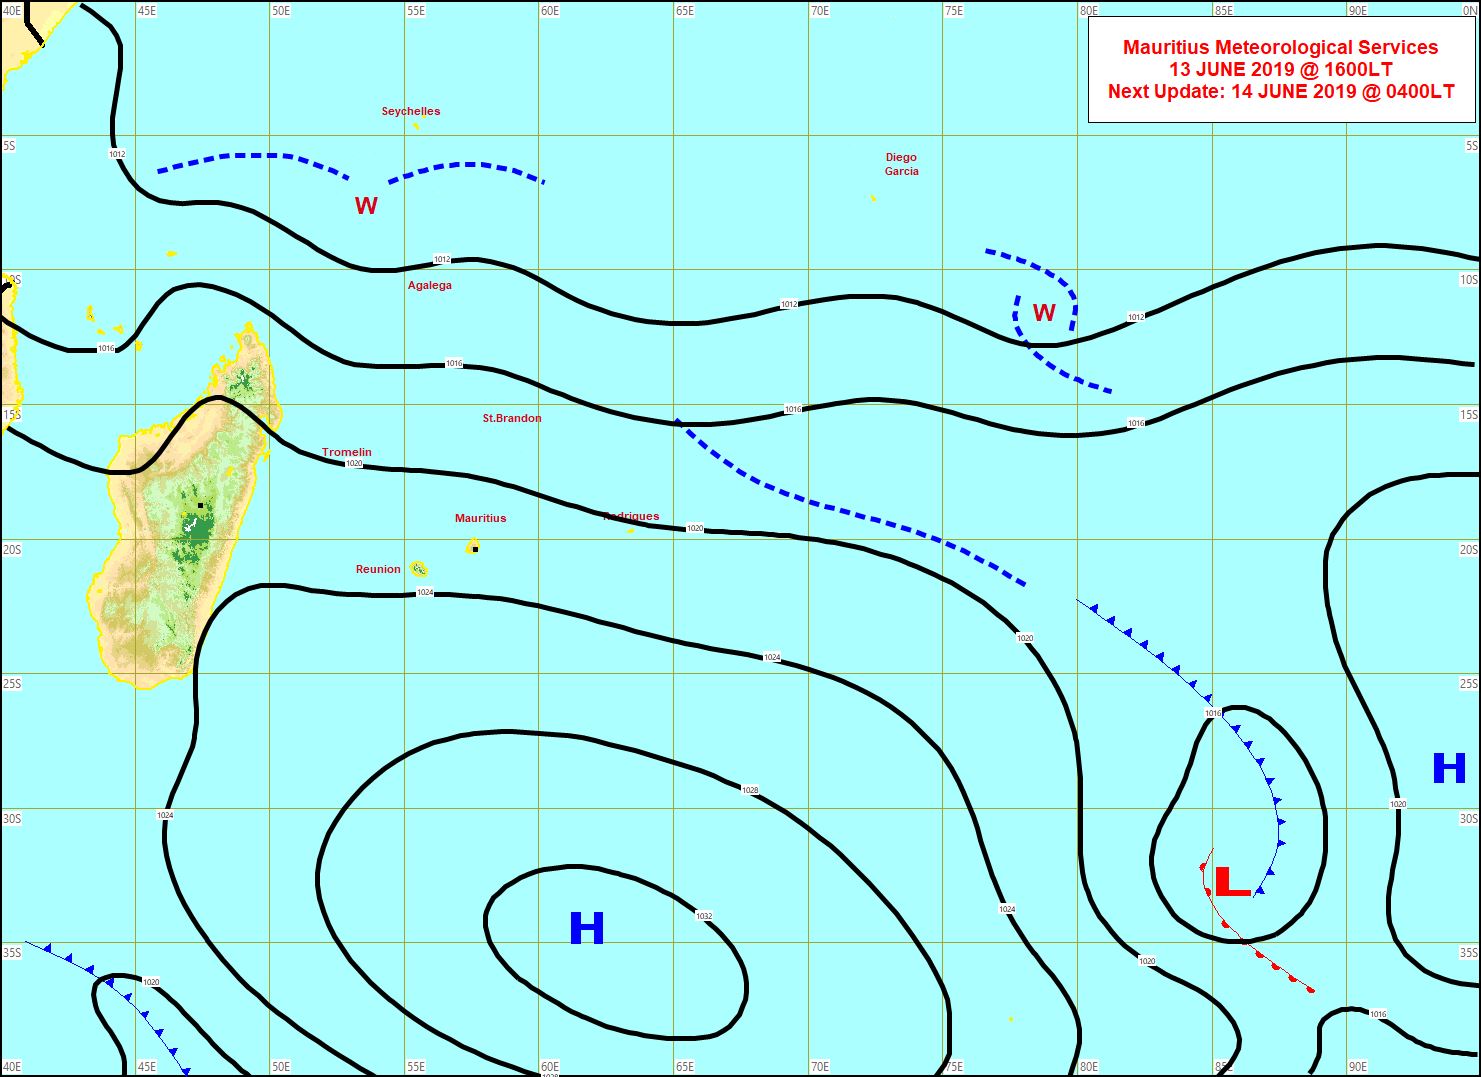 Analyse de la situation de surface à 16heures. L'anticyclone(H) commence à s'éloigner et les alizés faiblissent. MMS